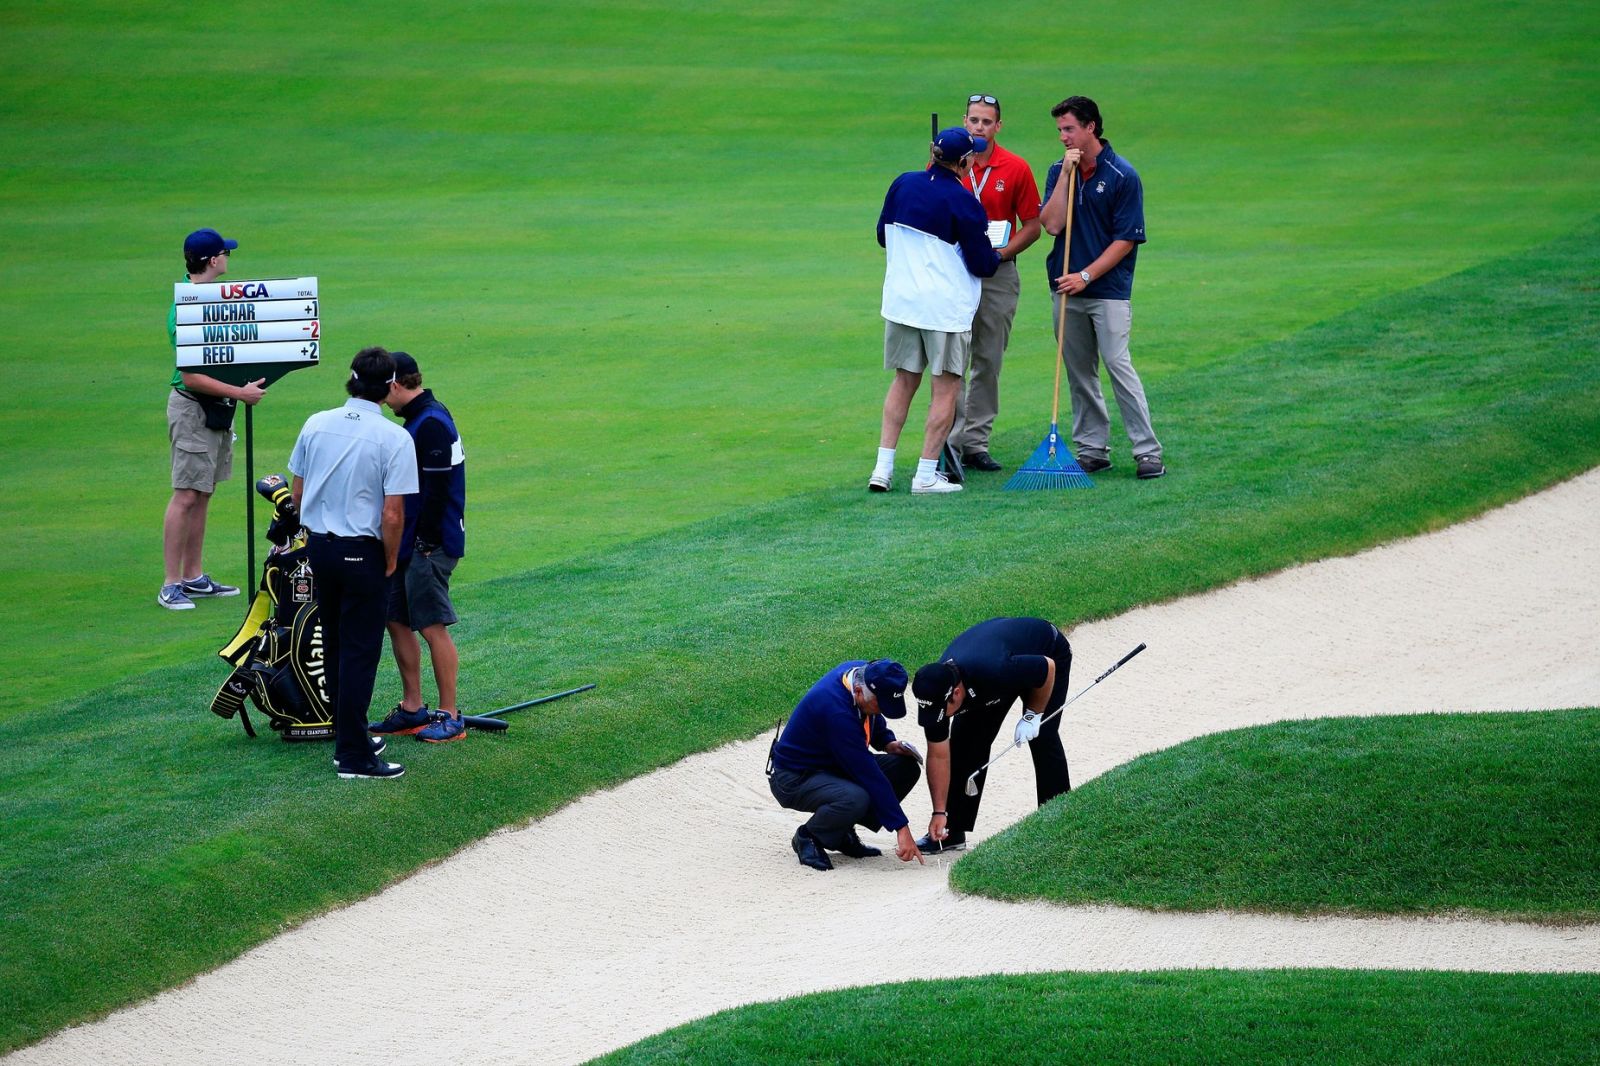 Luật Golf mới 2019 có lợi cho golfer nghiệp dư như thế nào?